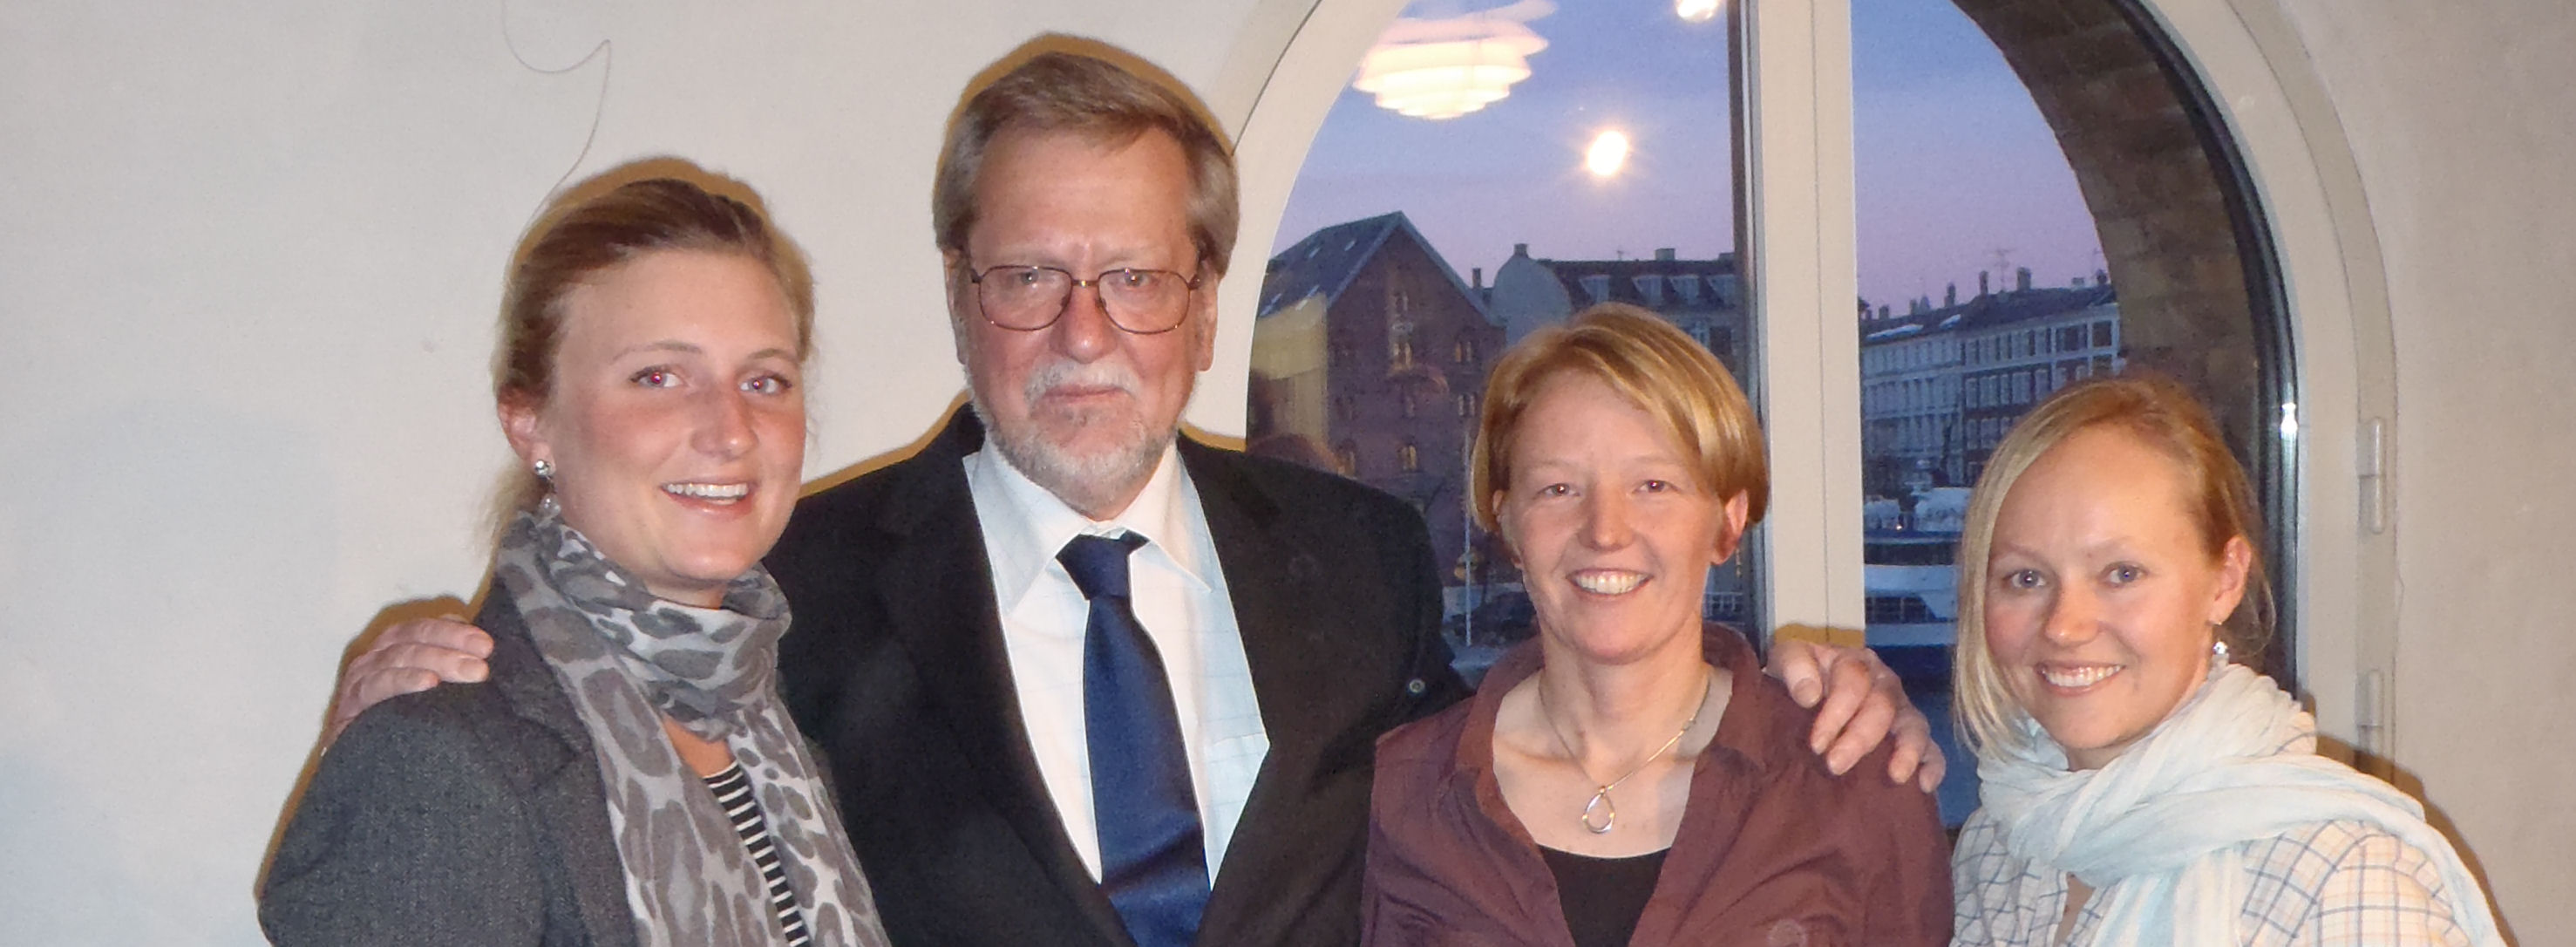 Fra venstre: Susanne Boidin, Per Stig Møller, Lotte Meldgaard og Helle Ørum fra Skovshoved.